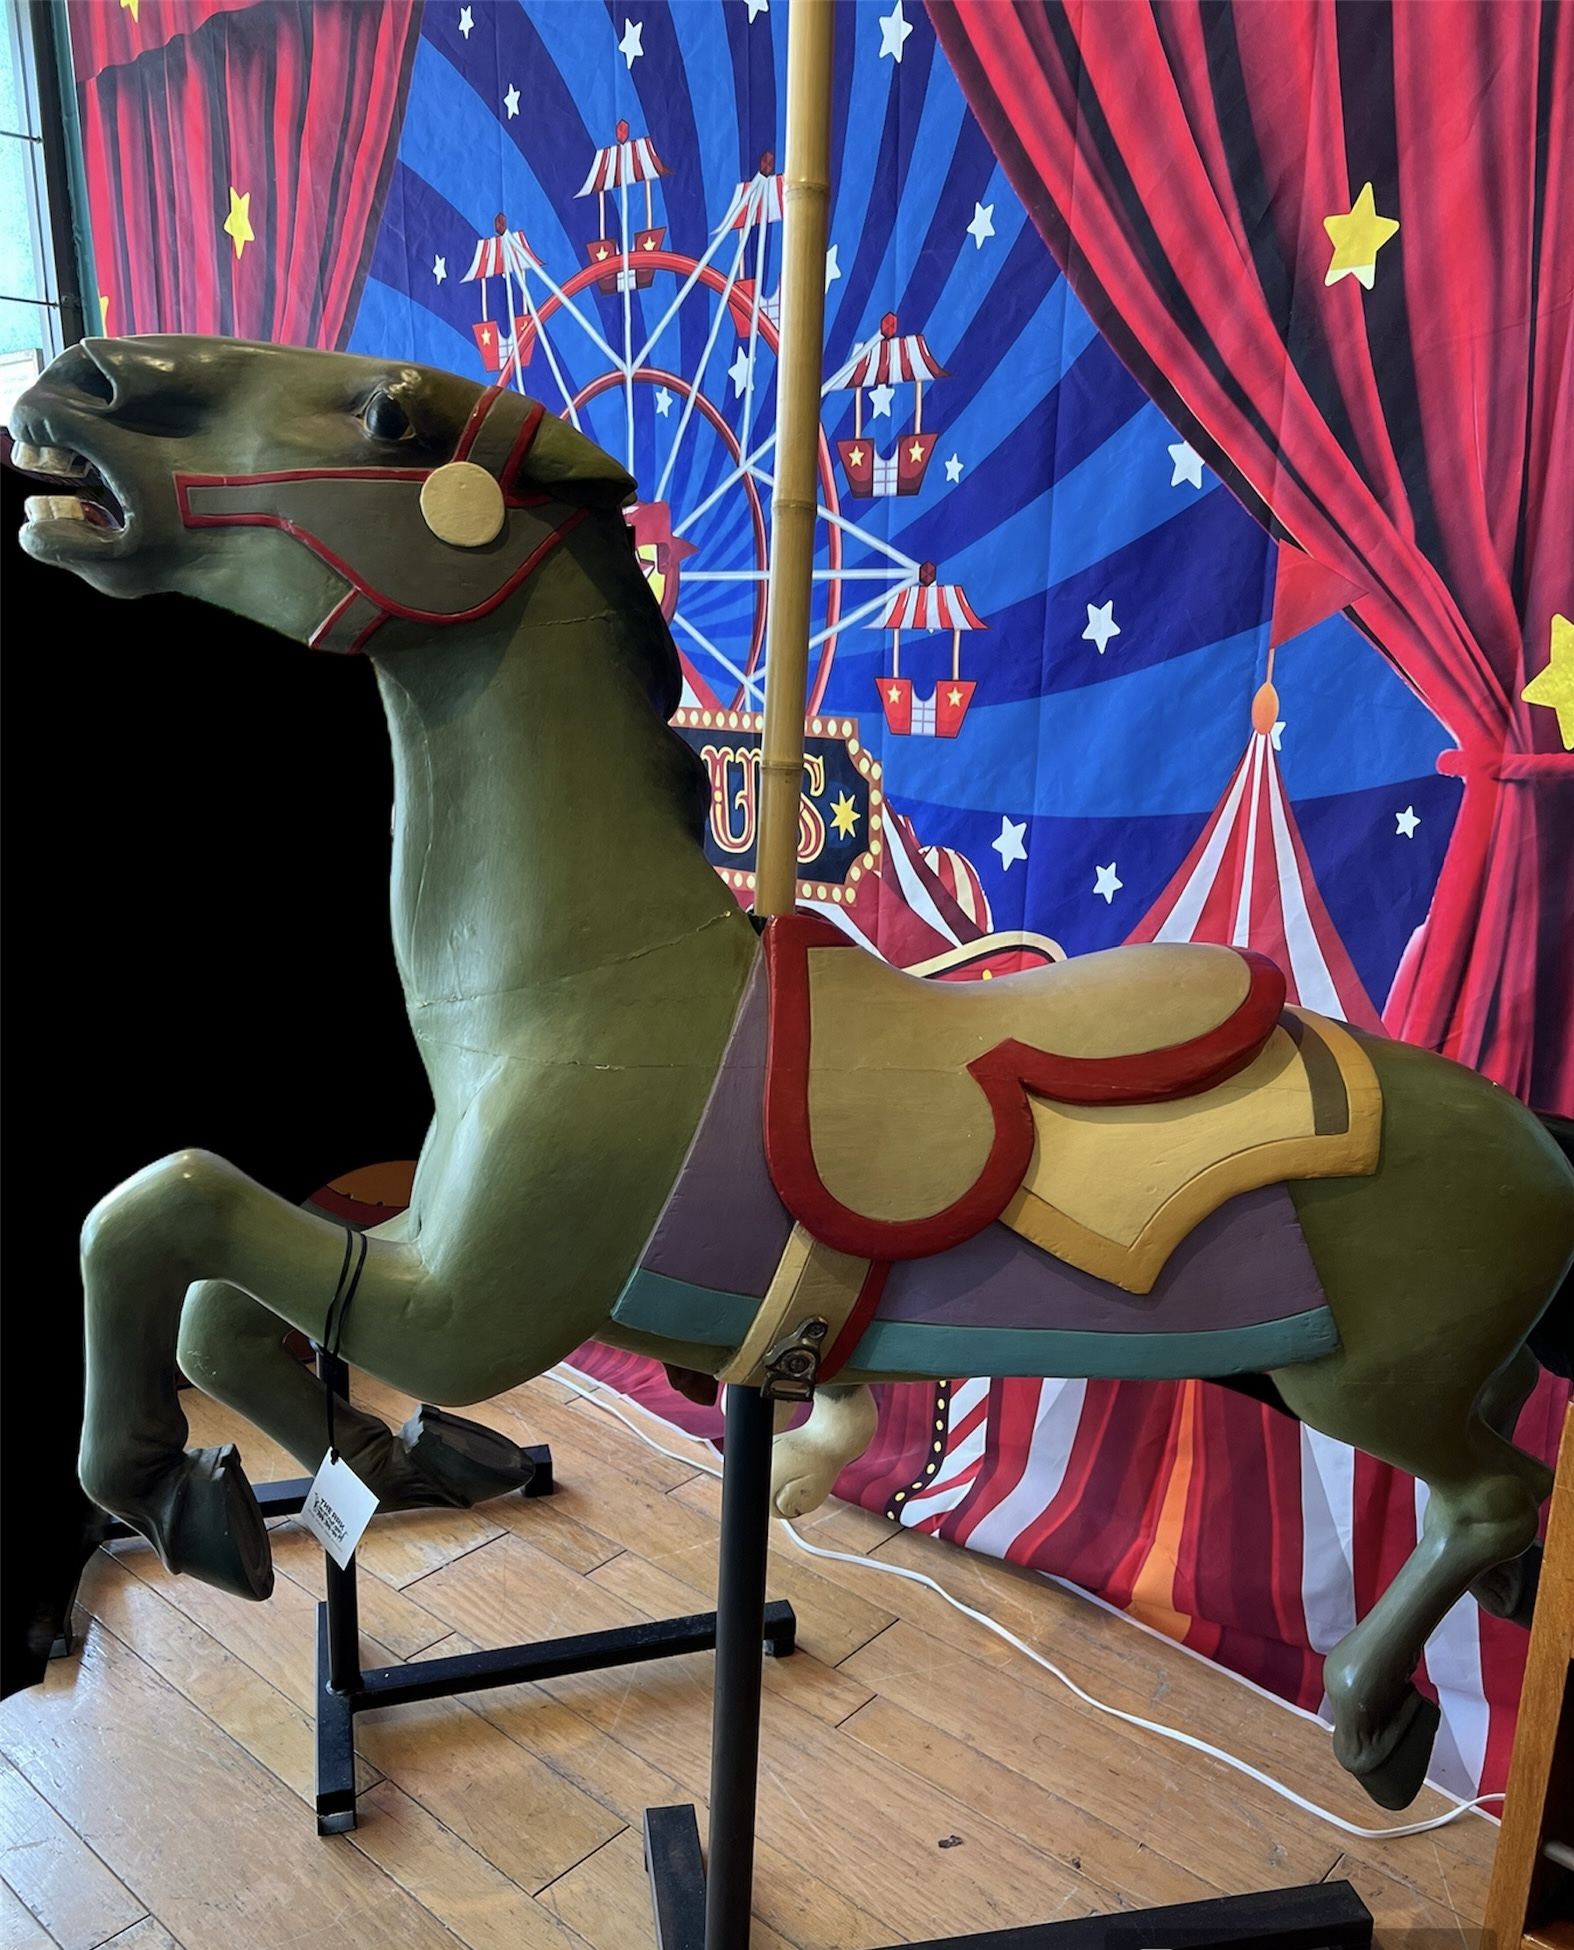 Allan Herschell Antique Carousel Horse